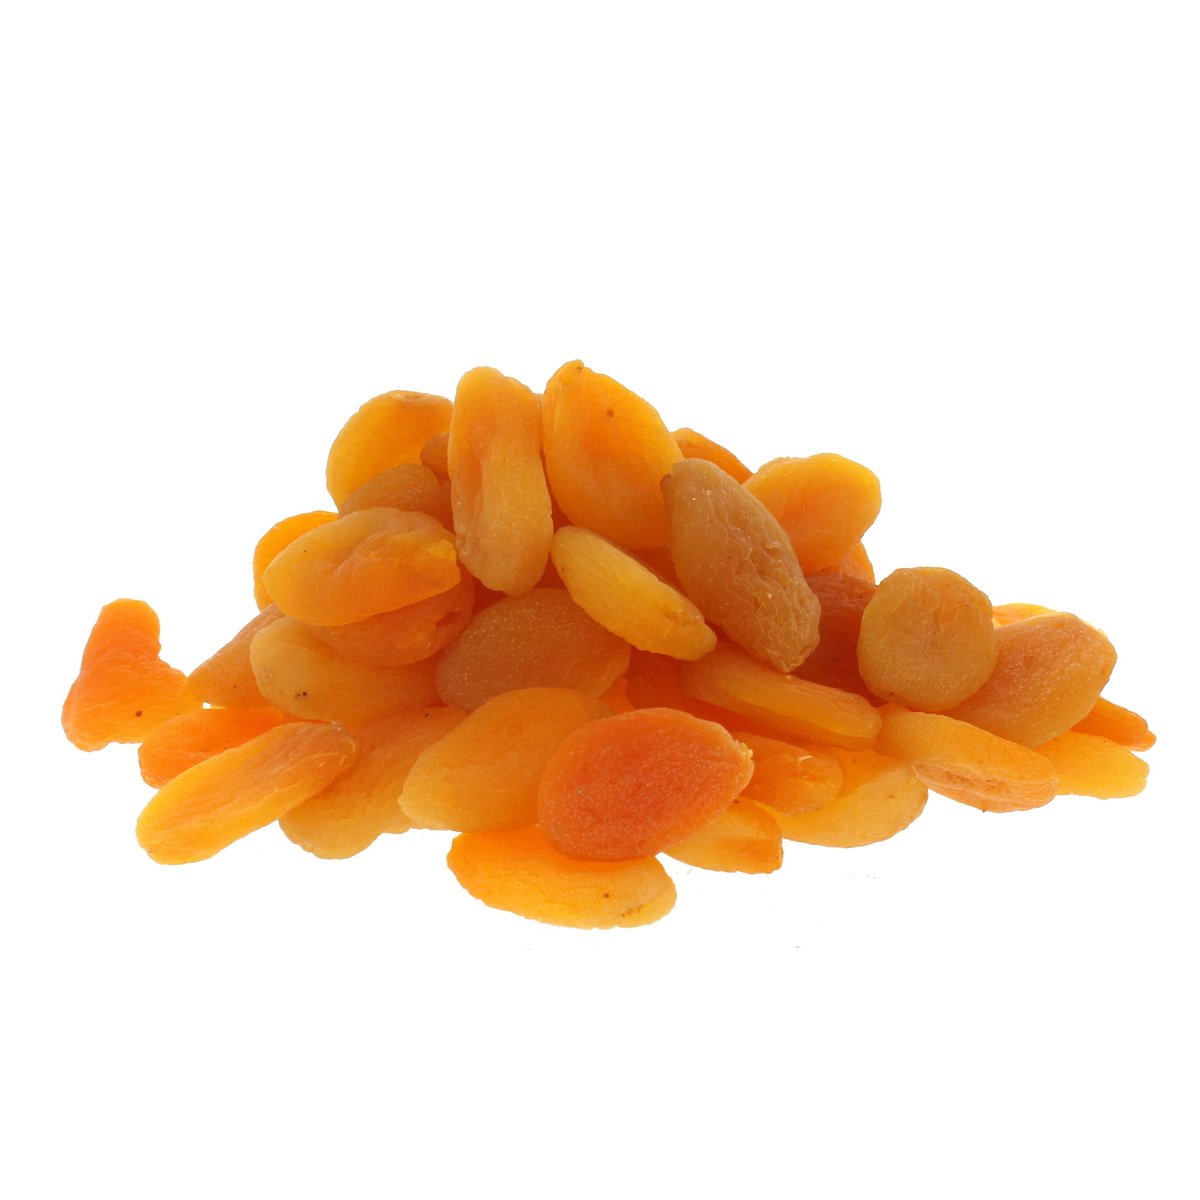 Turkish Dried Apricot Size-4 300 g